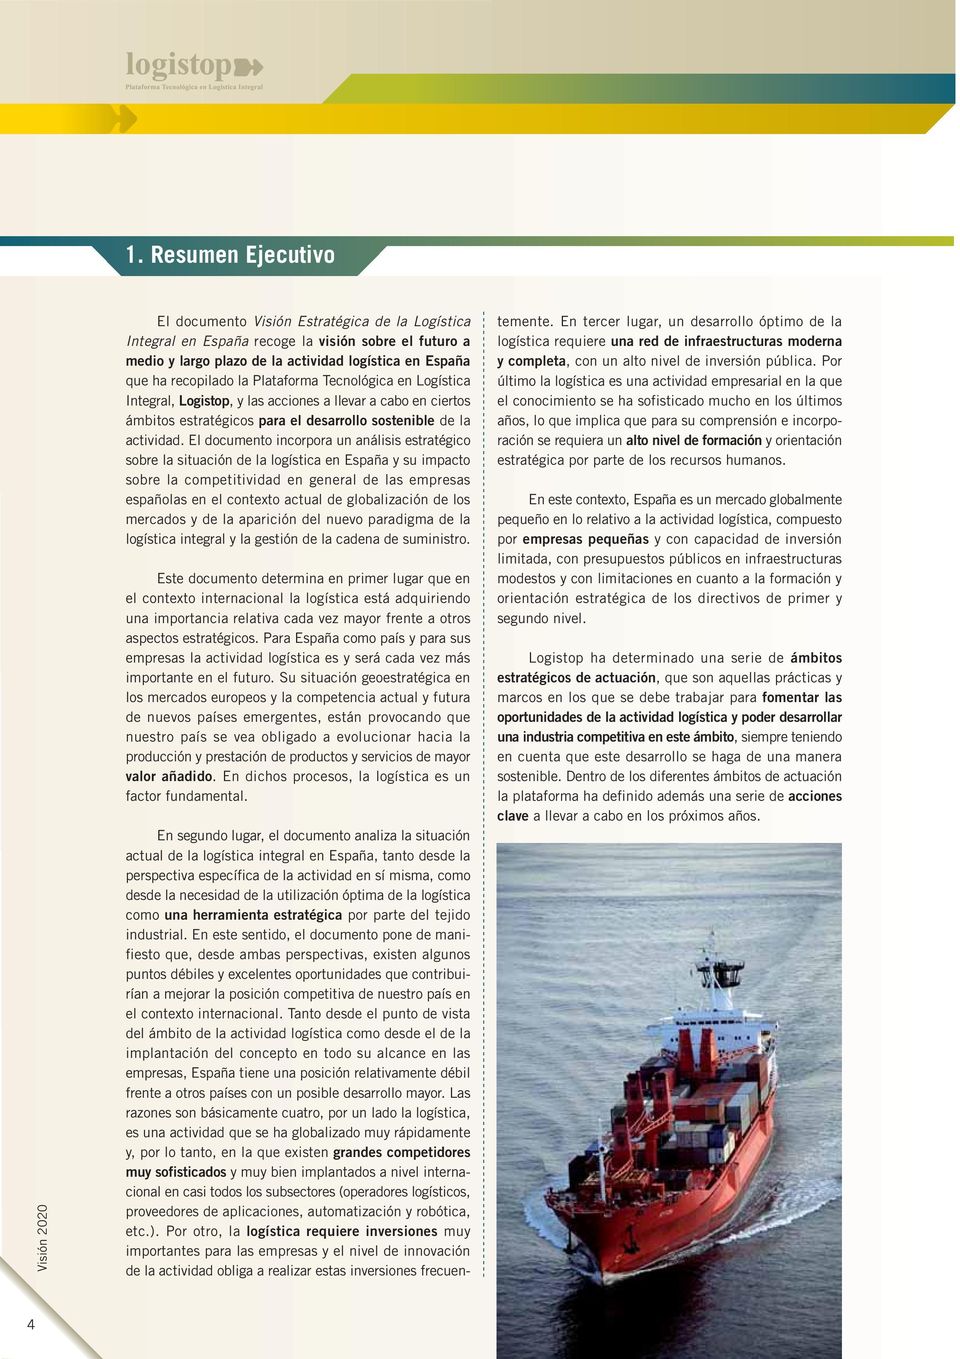 El documento incorpora un análisis estratégico sobre la situación de la logística en España y su impacto sobre la competitividad en general de las empresas españolas en el contexto actual de